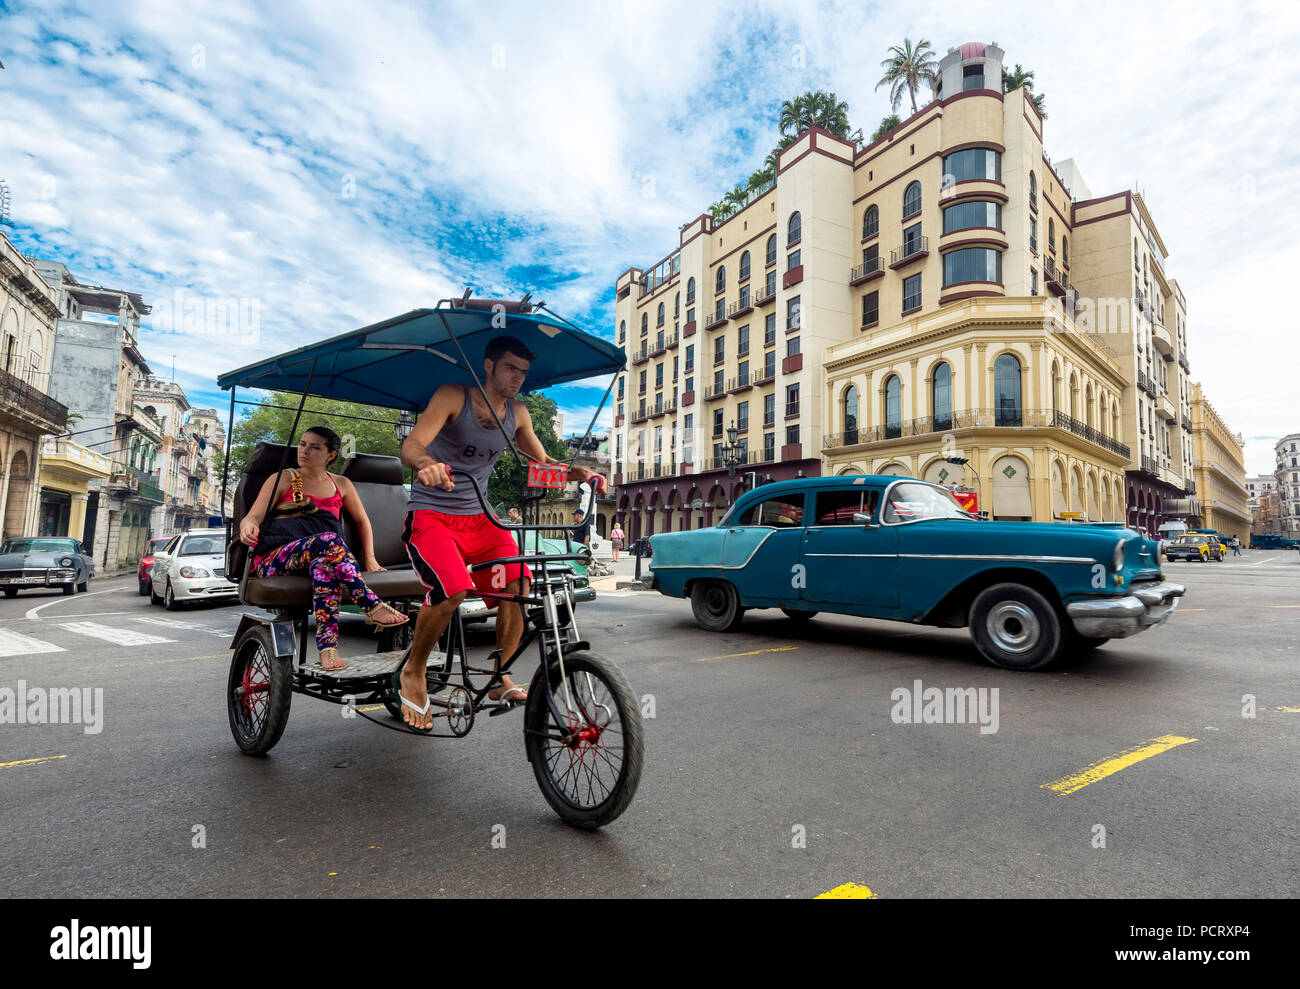 Historische Wagen in der Straßenszene, Fahrrad Rikscha, menschliche Taxi auf der Straße Kreuzung am Hotel Telegrafo, La Habana, Havanna, La Habana, Kuba, Kuba Stockfoto